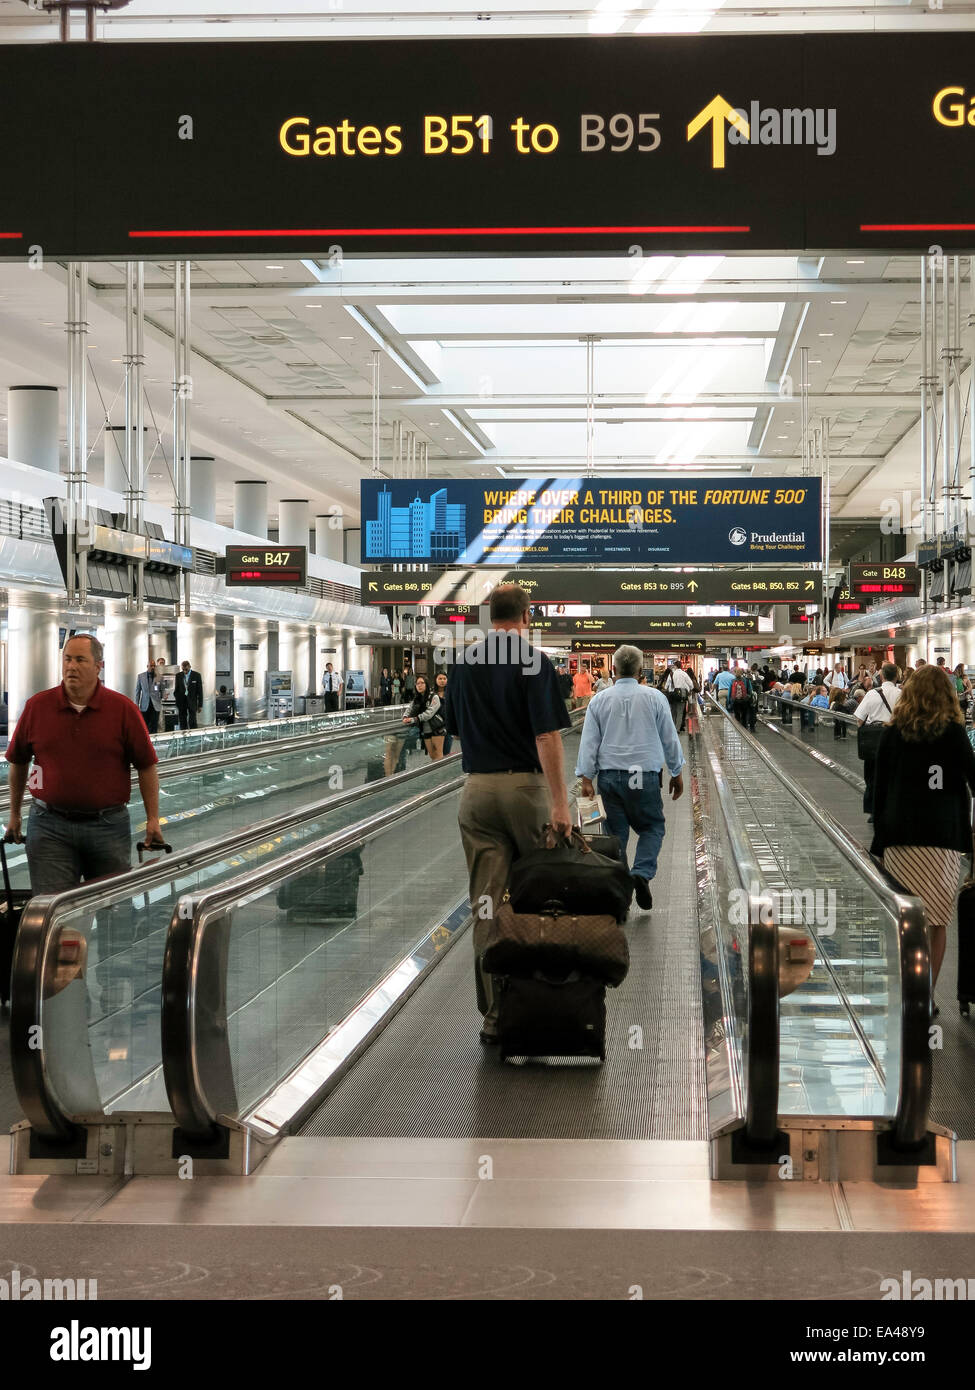 Les voyageurs de l'aéroport, trottoirs roulants et portes, United Terminal, l'Aéroport International de Denver, CO Banque D'Images